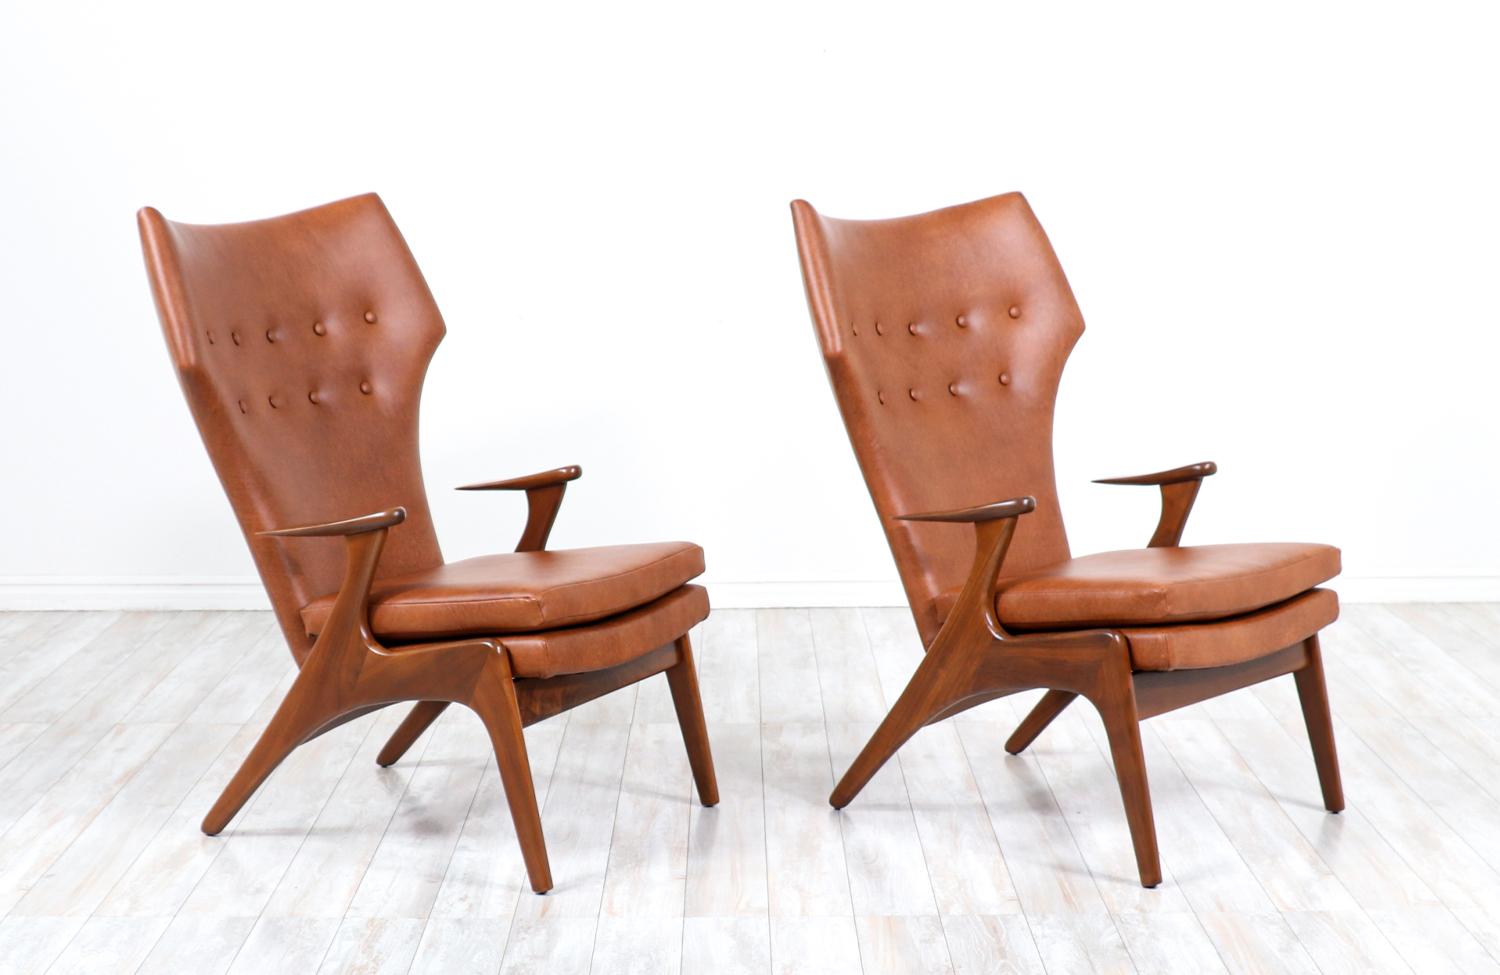 Ein Paar stilvolle moderne Stühle mit hoher Rückenlehne, entworfen von Kurt Østervig für Rolschau Møbler in Dänemark um 1950. Diese wunderschönen Stühle haben einen Rahmen aus massivem Walnussholz mit geschwungenen, blattförmigen Armlehnen, die die